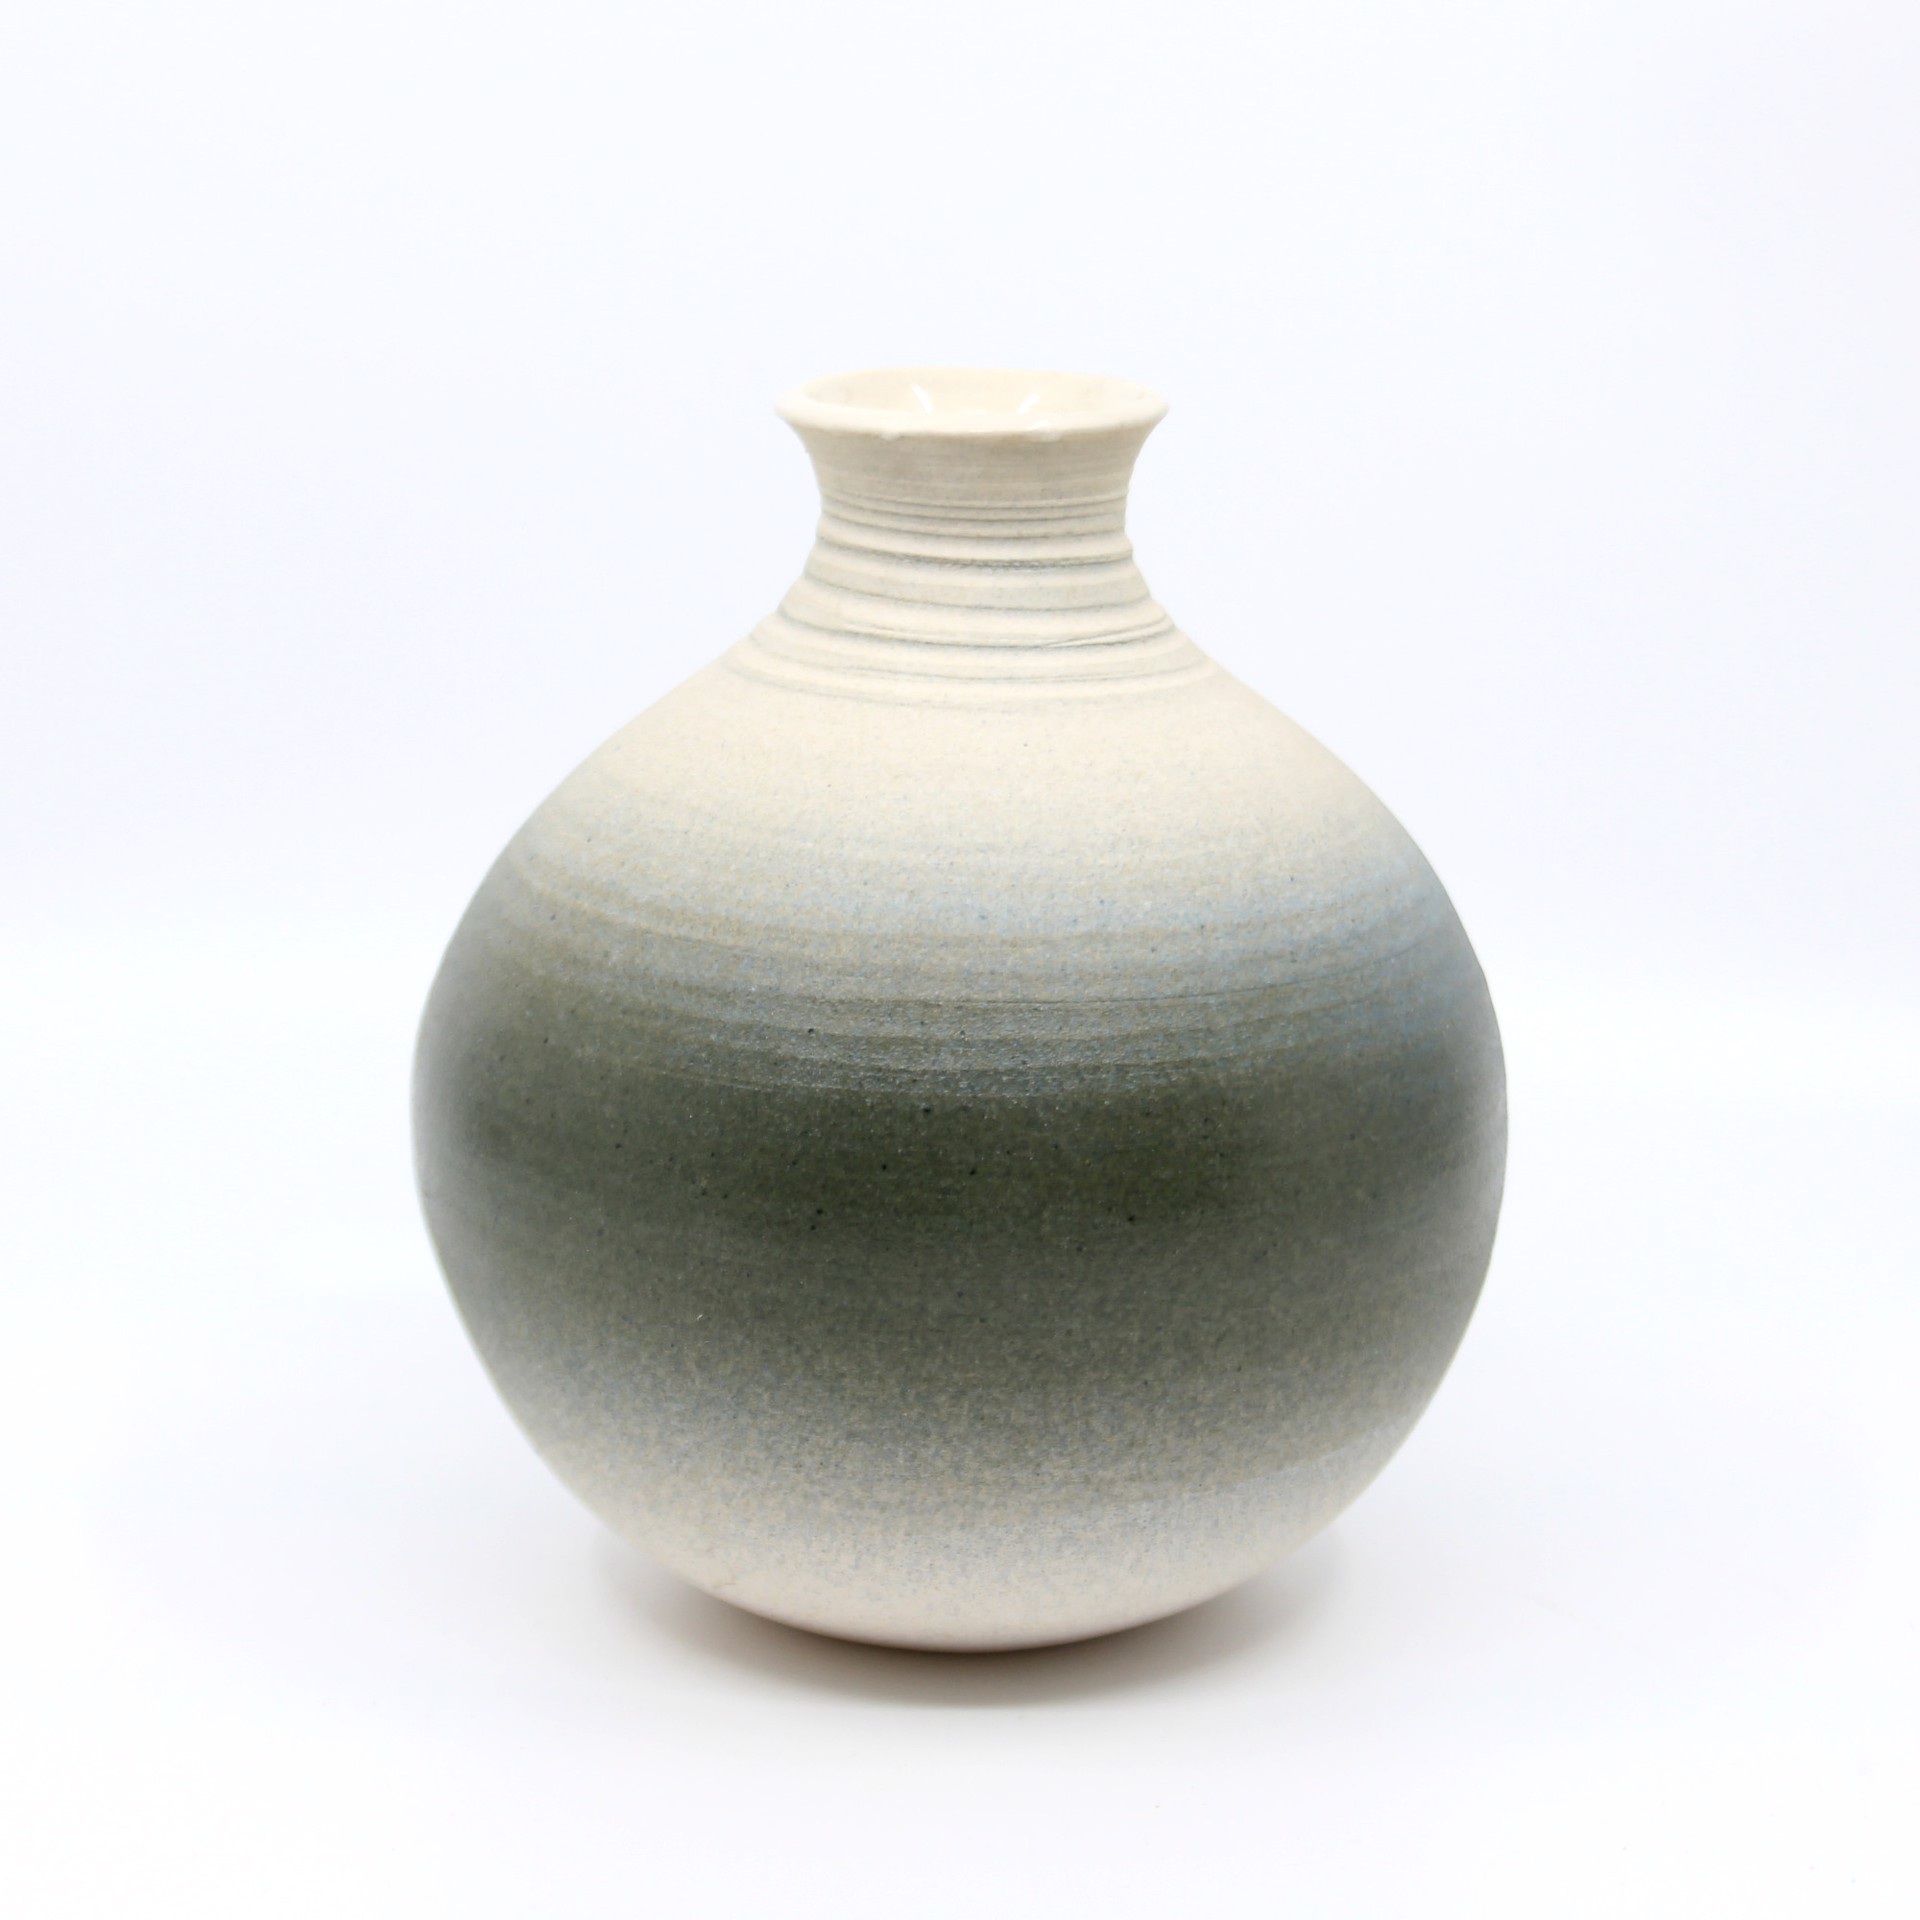 Vase 12 by Heather Bradley